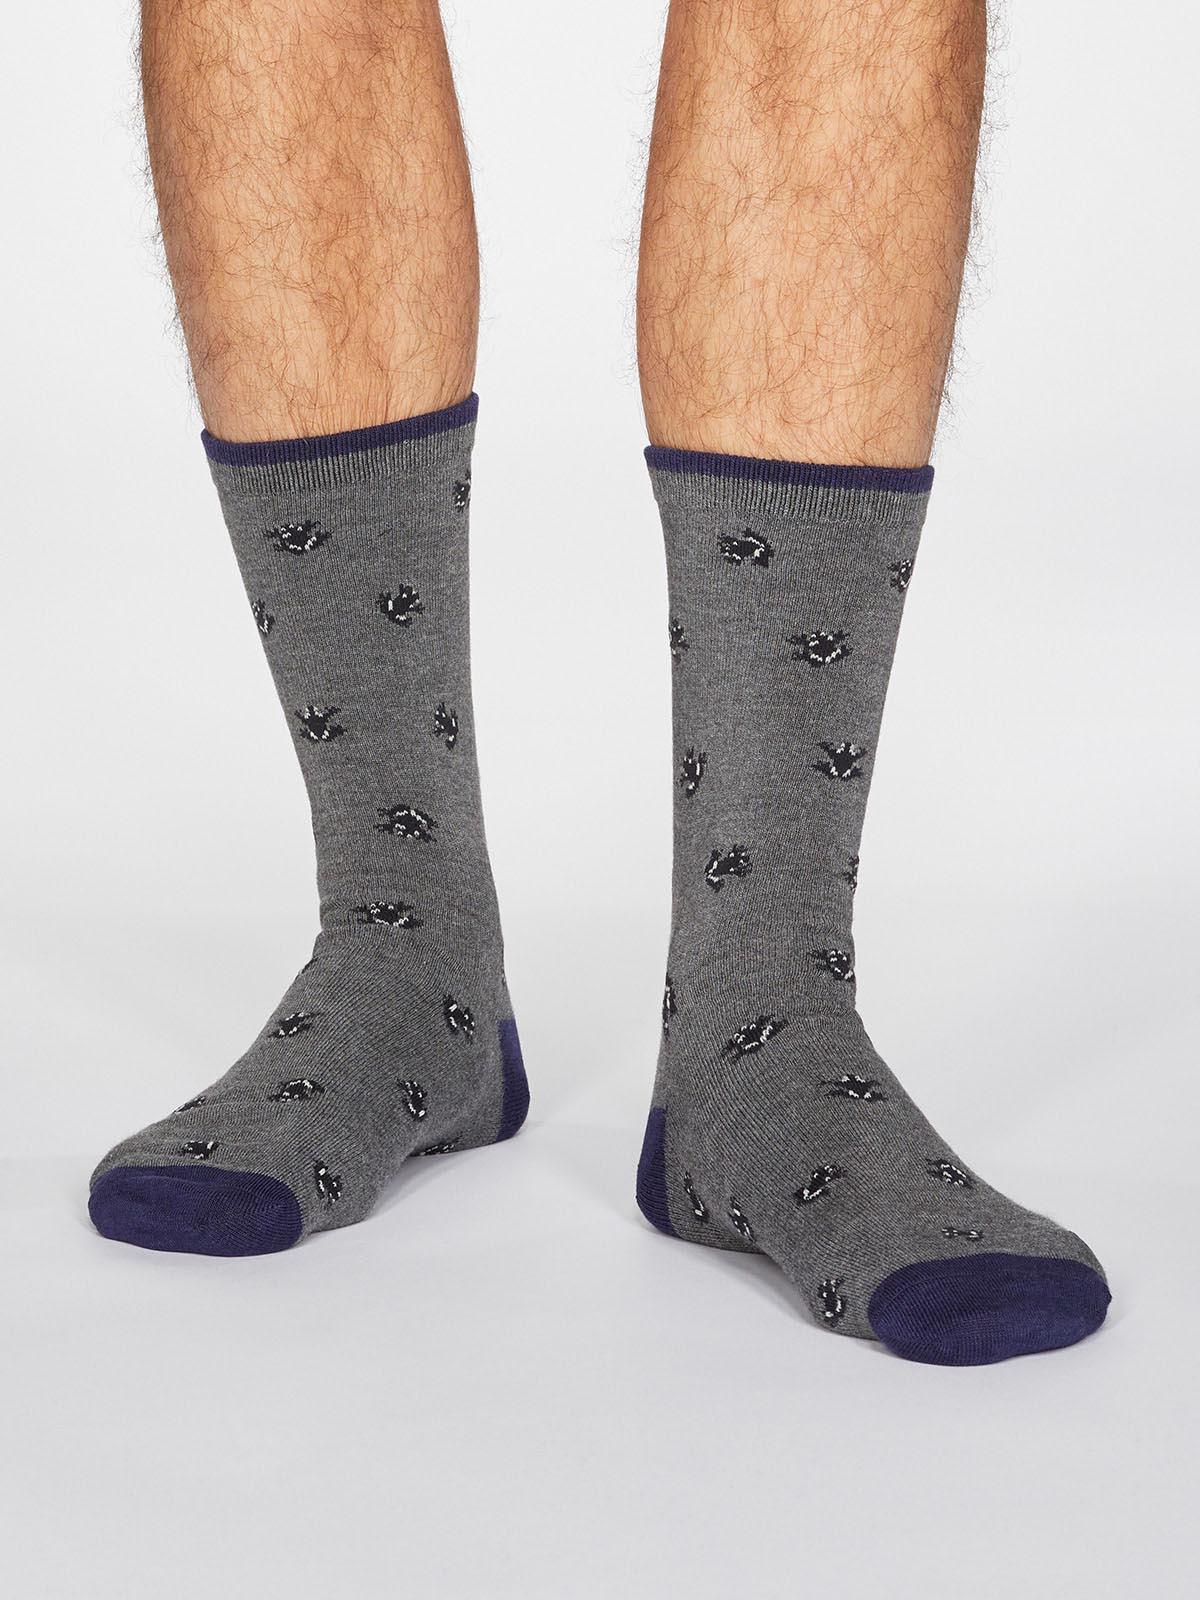 Wesley Frog Socks - Dark Grey Marle - Thought Clothing UK